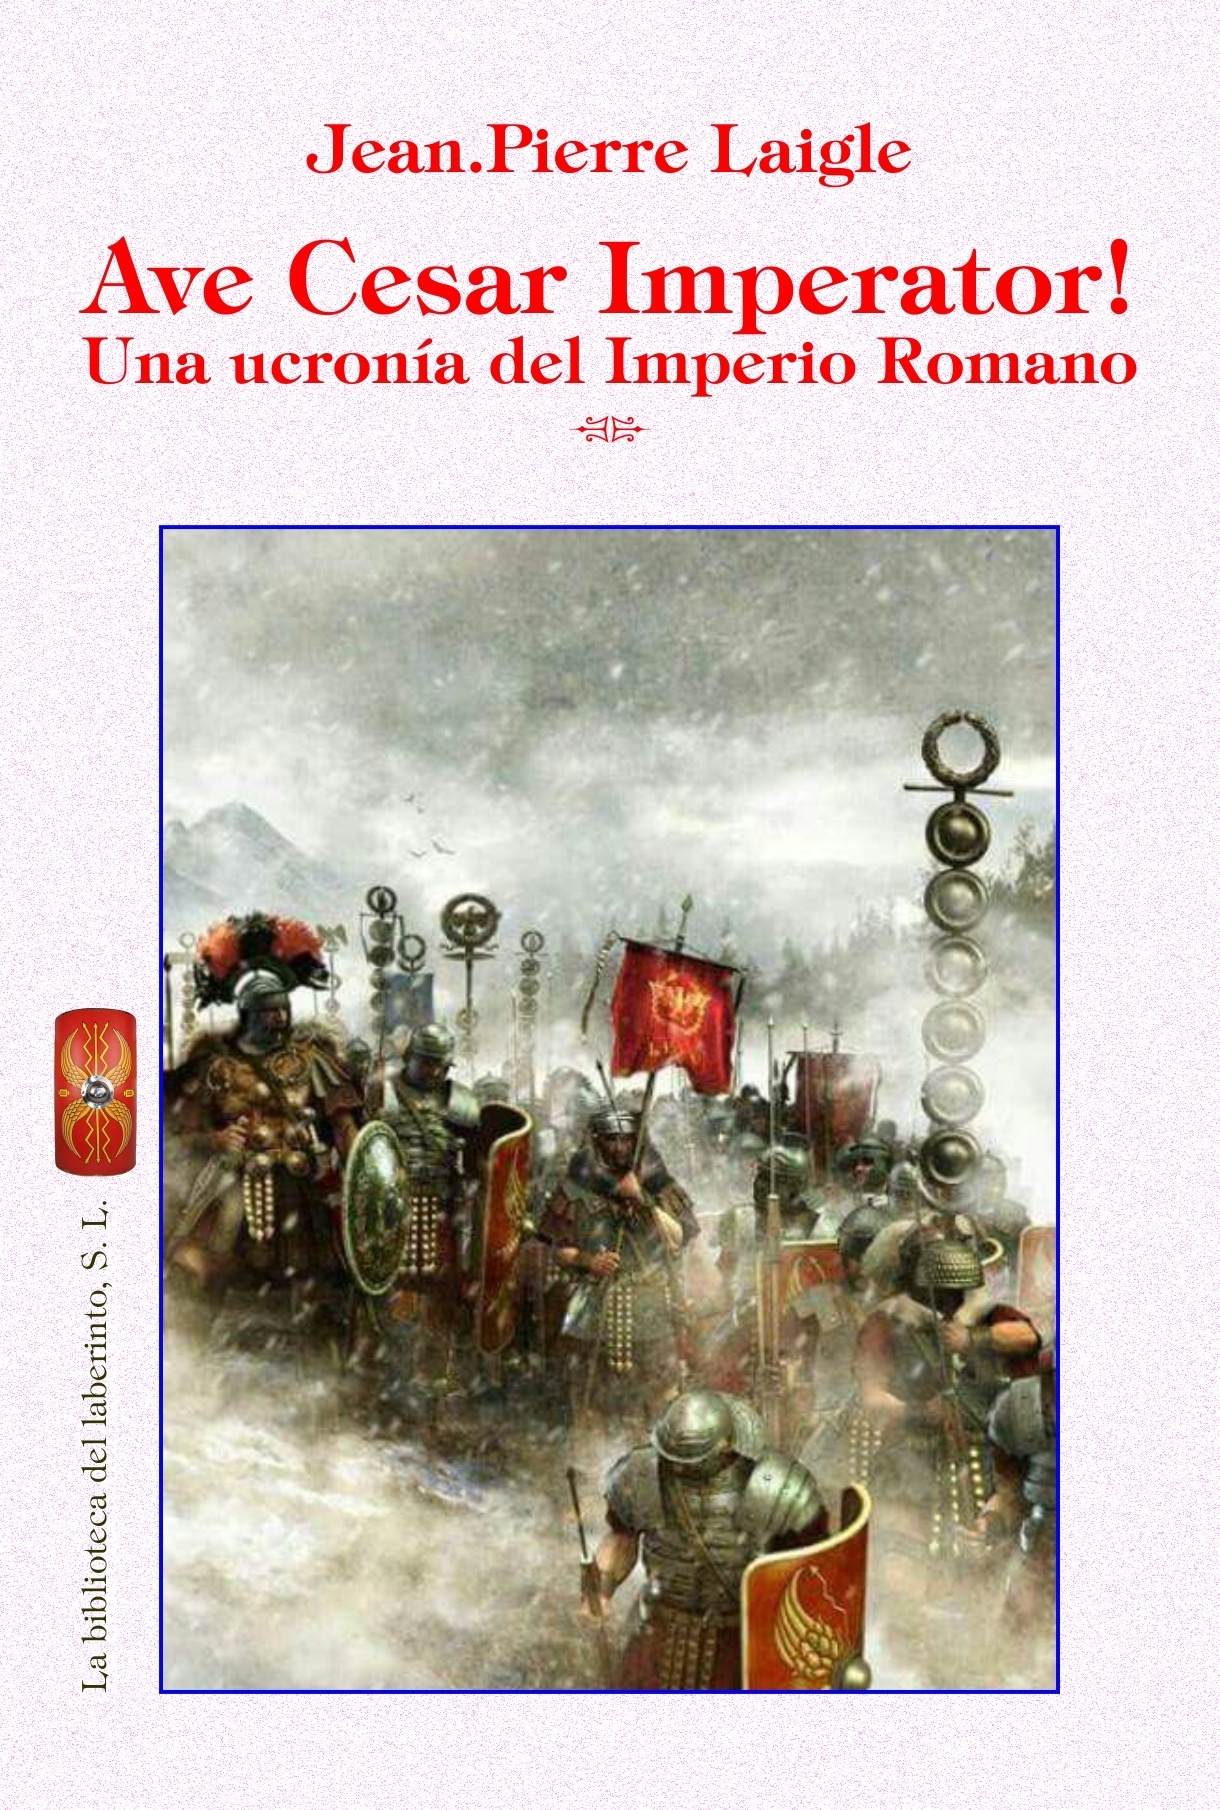 Ave Cesar Imperator! "Una ucronía del Imperio Romano". 